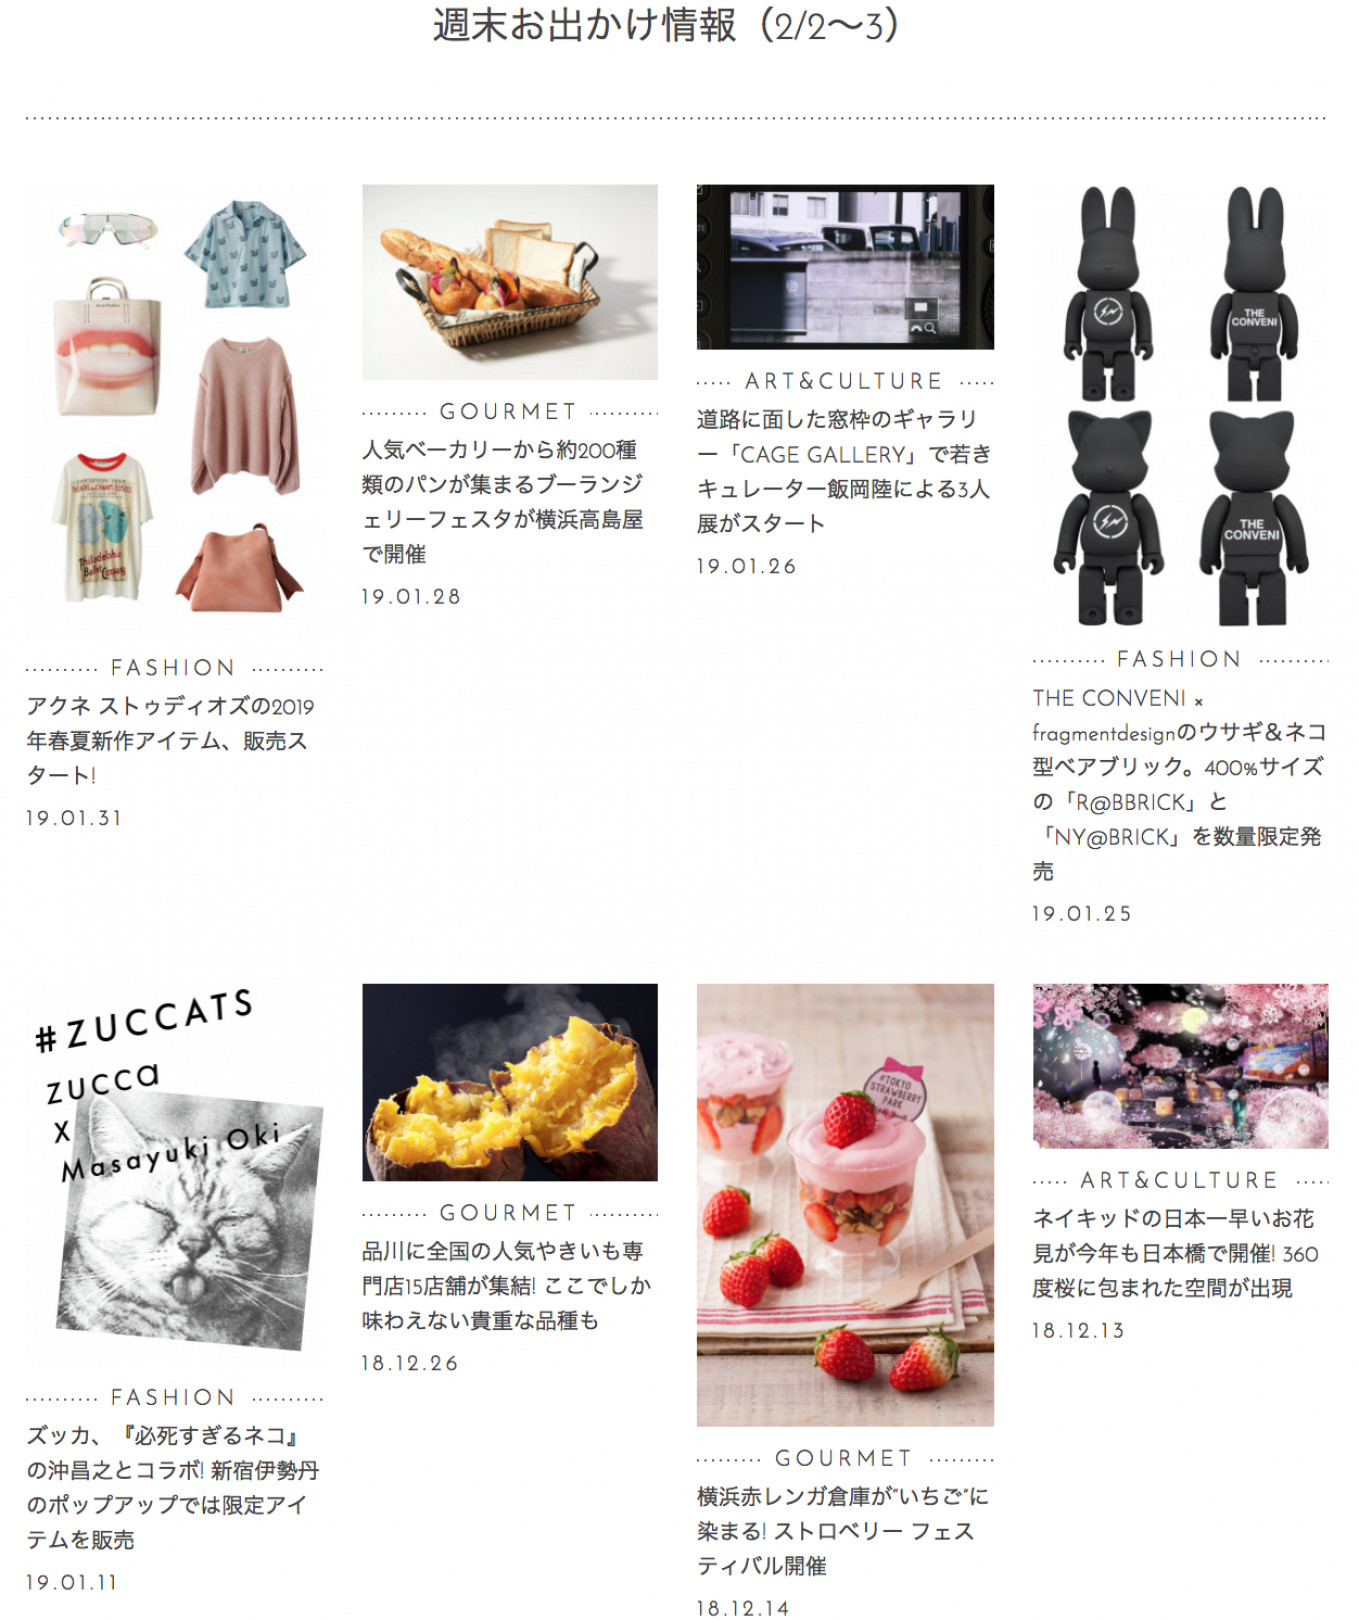 日本一早いお花見で桜に包まれる、THE CONVENI × fragmentdesignのウサギ＆ネコ型ベアブリック発売、横浜赤レンガ倉庫で